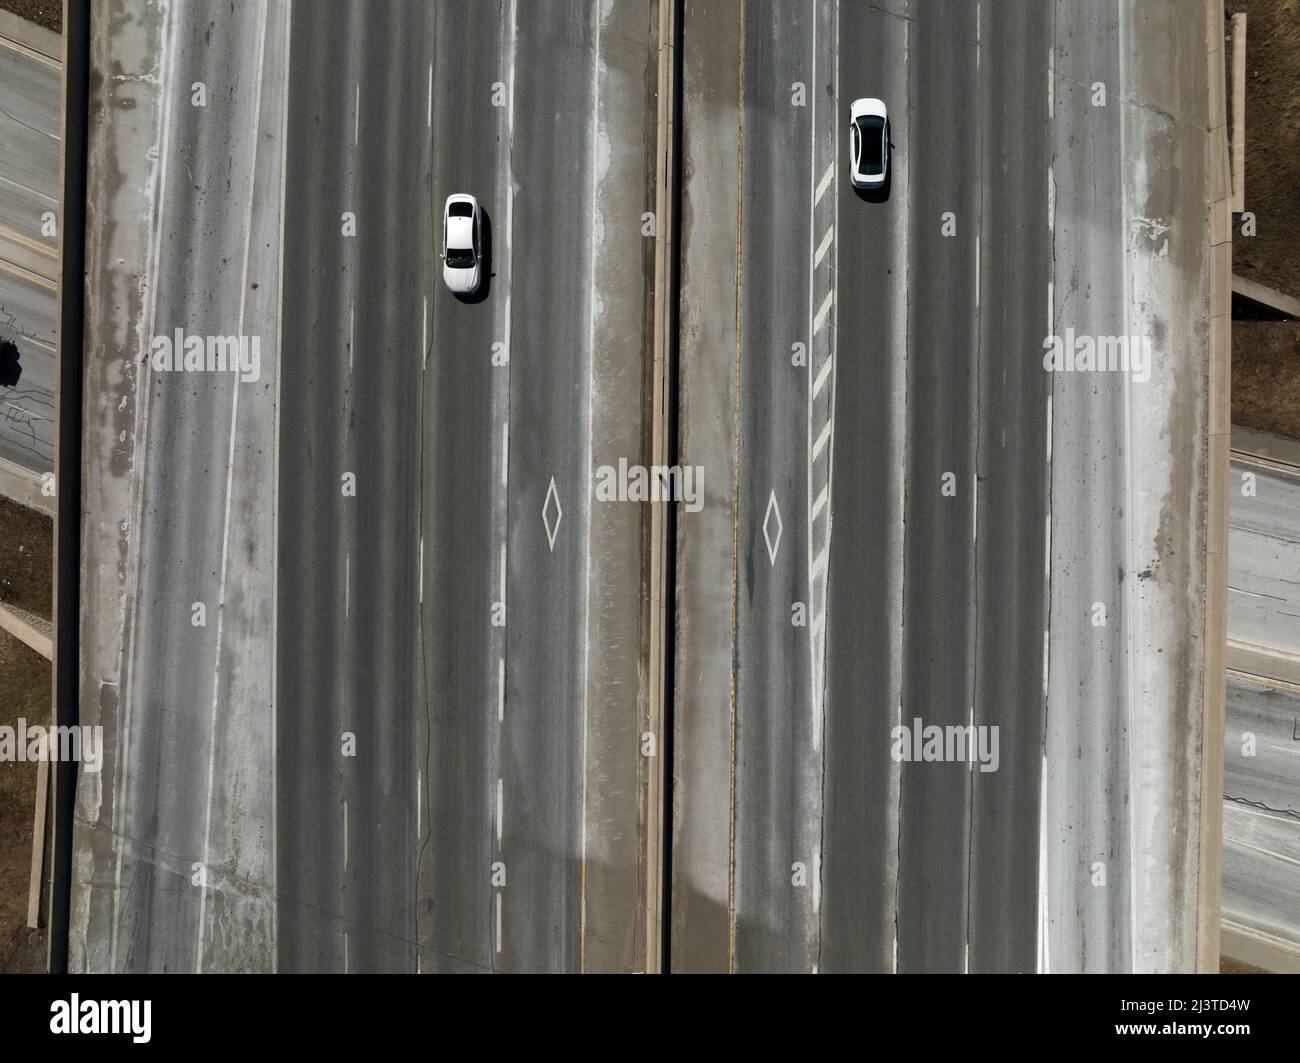 Les logos des voies de circulation sont visibles sur une grande autoroute au fur et à mesure que deux voitures passent. Banque D'Images